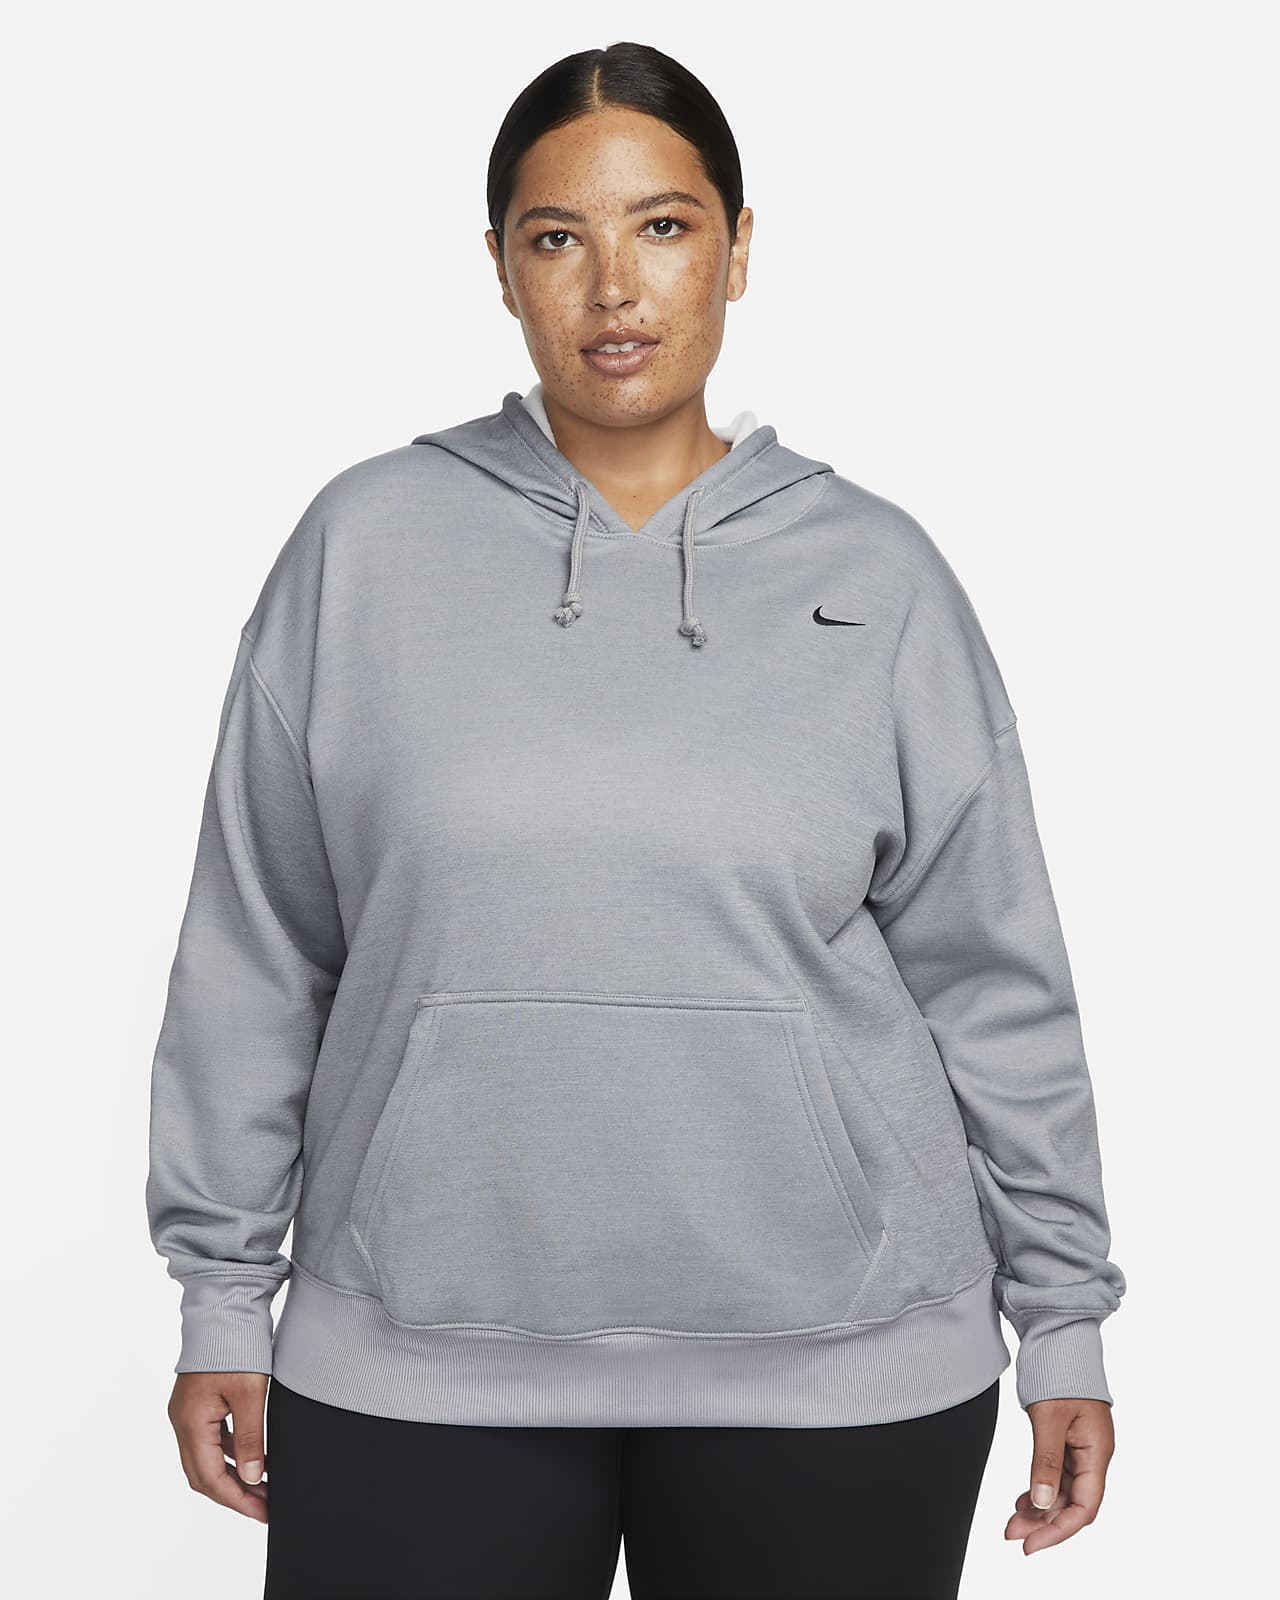 Presunción por no mencionar Gallina Nike Therma-FIT All Time Women's Pullover Training Hoodie (Plus Size). Nike .com